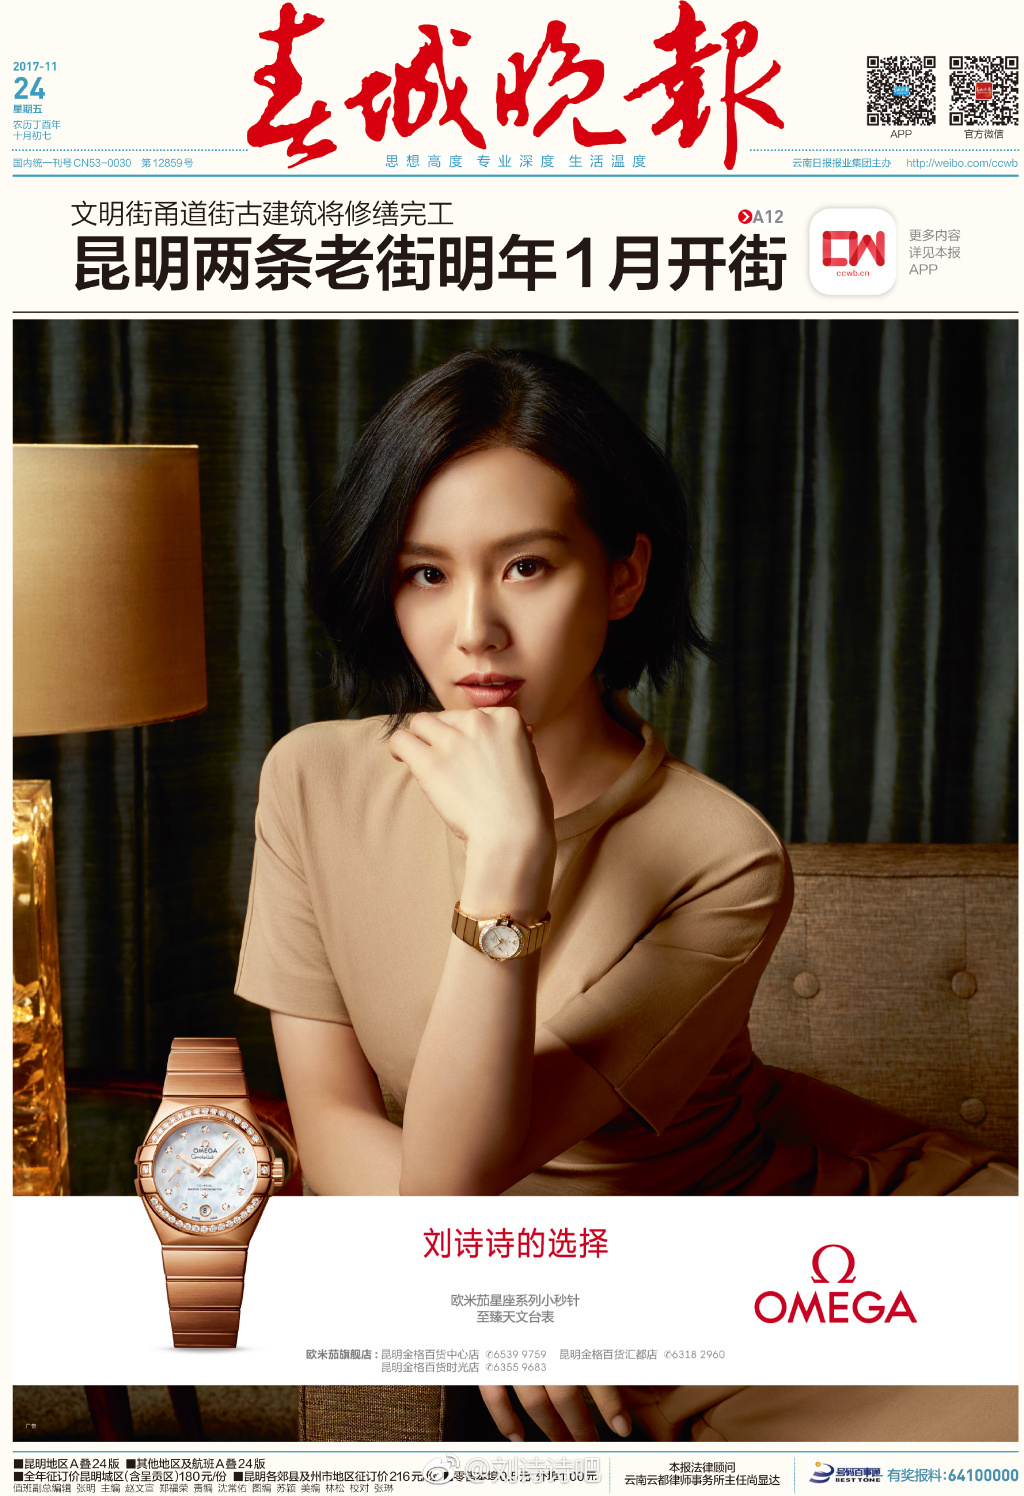 4,欧米茄刘诗诗同款:刘诗诗最近代言过手表品牌吗?是欧米茄吗?